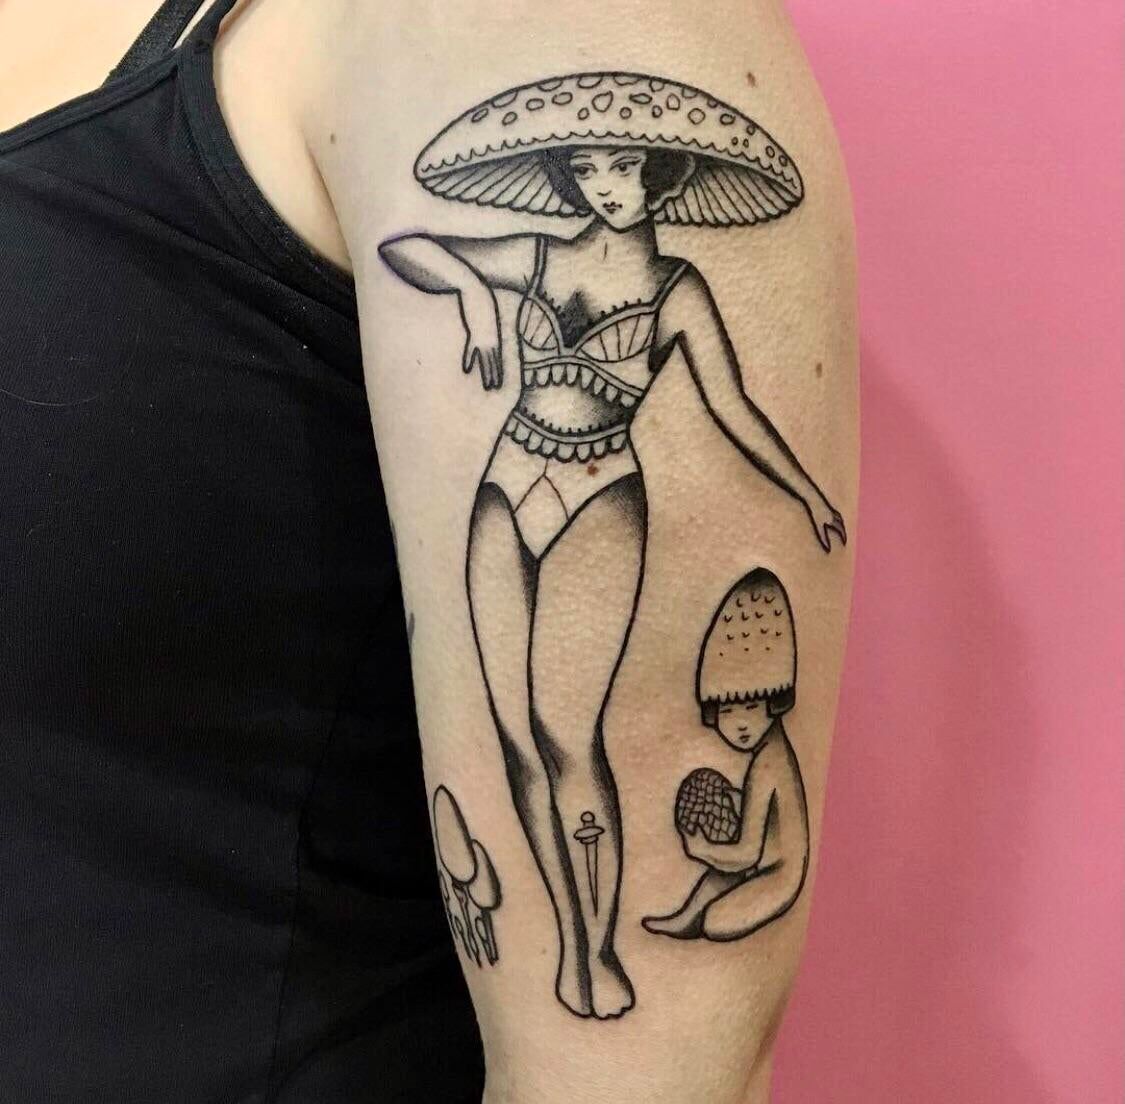 Mushroom Lady amp Babe by Emilie Robinson @ Merci Tattoo